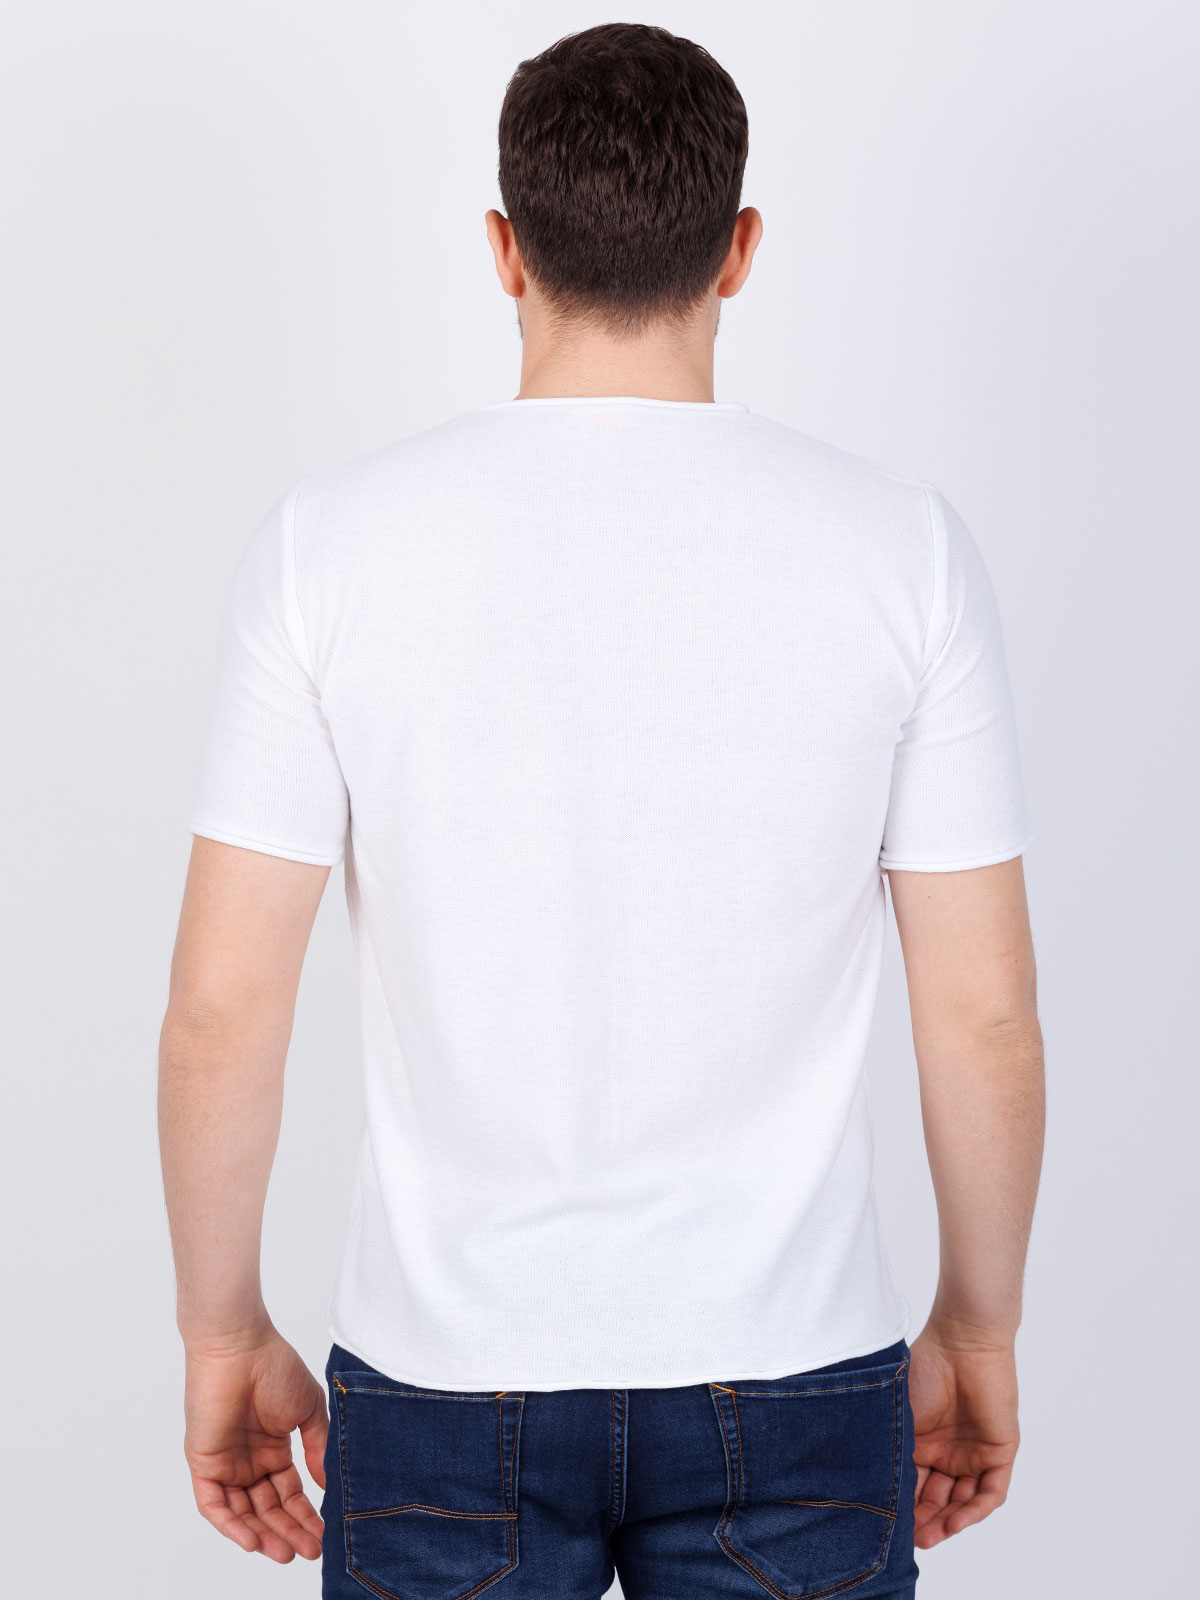 Tshirt πλεκτό  λευκό - 86008 € 6.75 img4